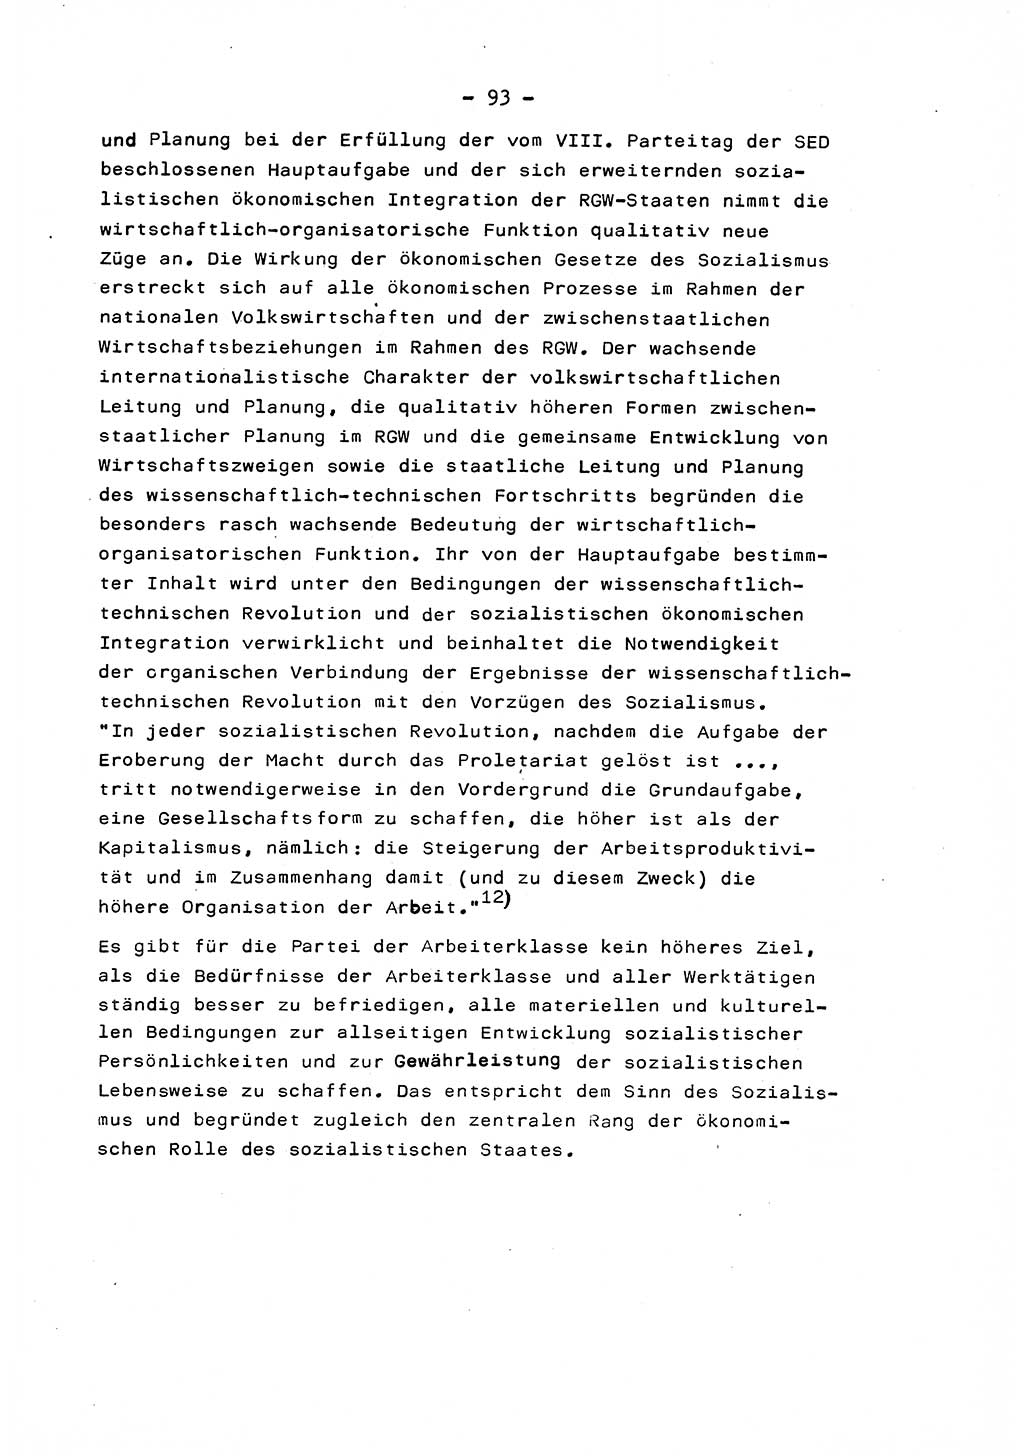 Marxistisch-leninistische Staats- und Rechtstheorie [Deutsche Demokratische Republik (DDR)] 1975, Seite 93 (ML St.-R.-Th. DDR 1975, S. 93)